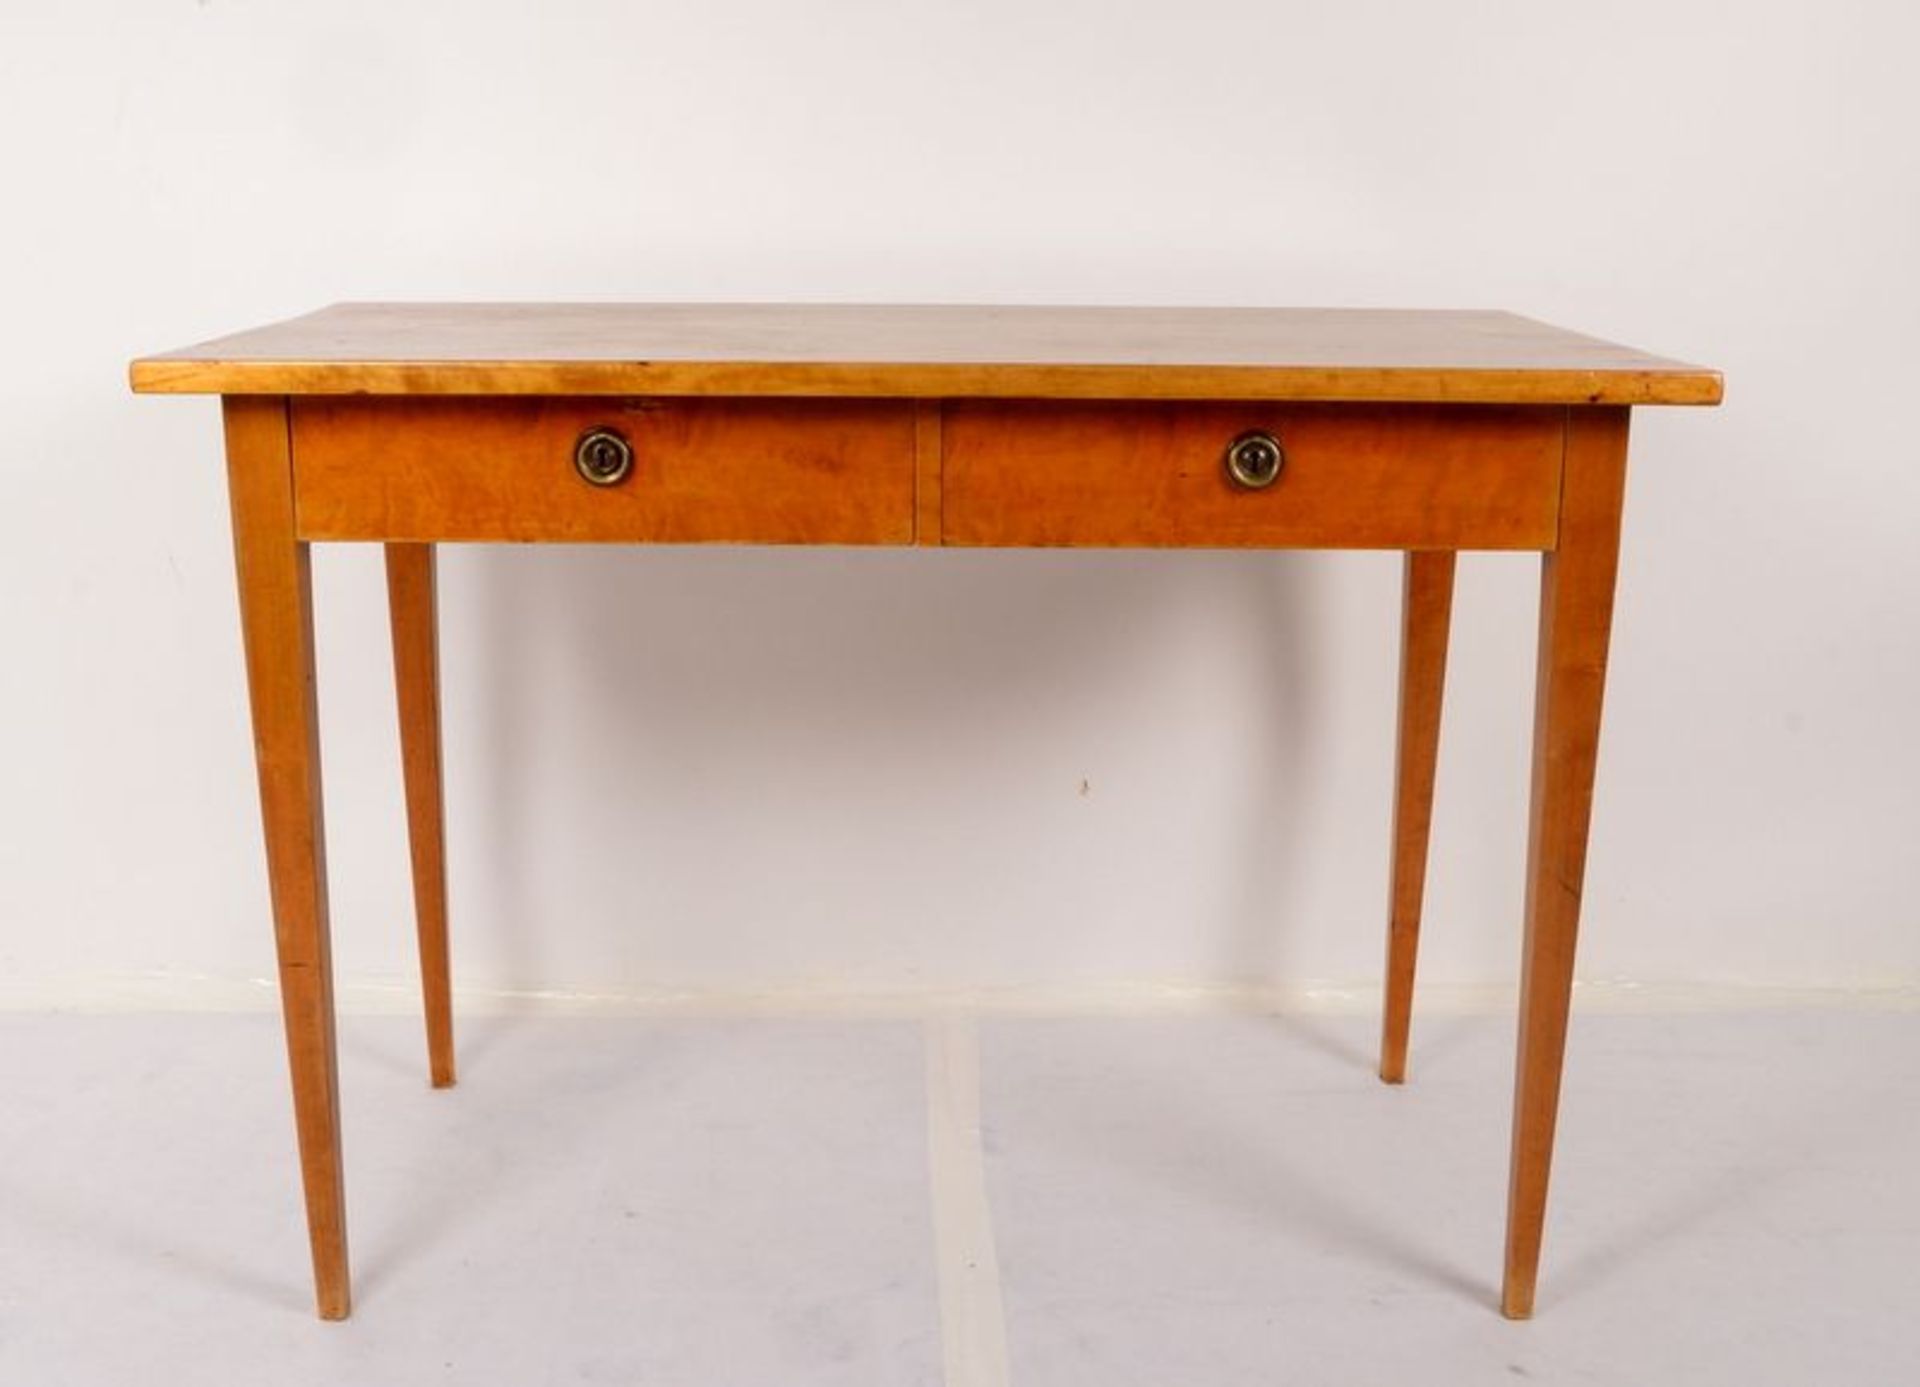 Schreibtisch, Birke, rechteckige Schreibplatte oberhalb 2x Schüben, Tisch auf konischen Beinen; - Bild 2 aus 3